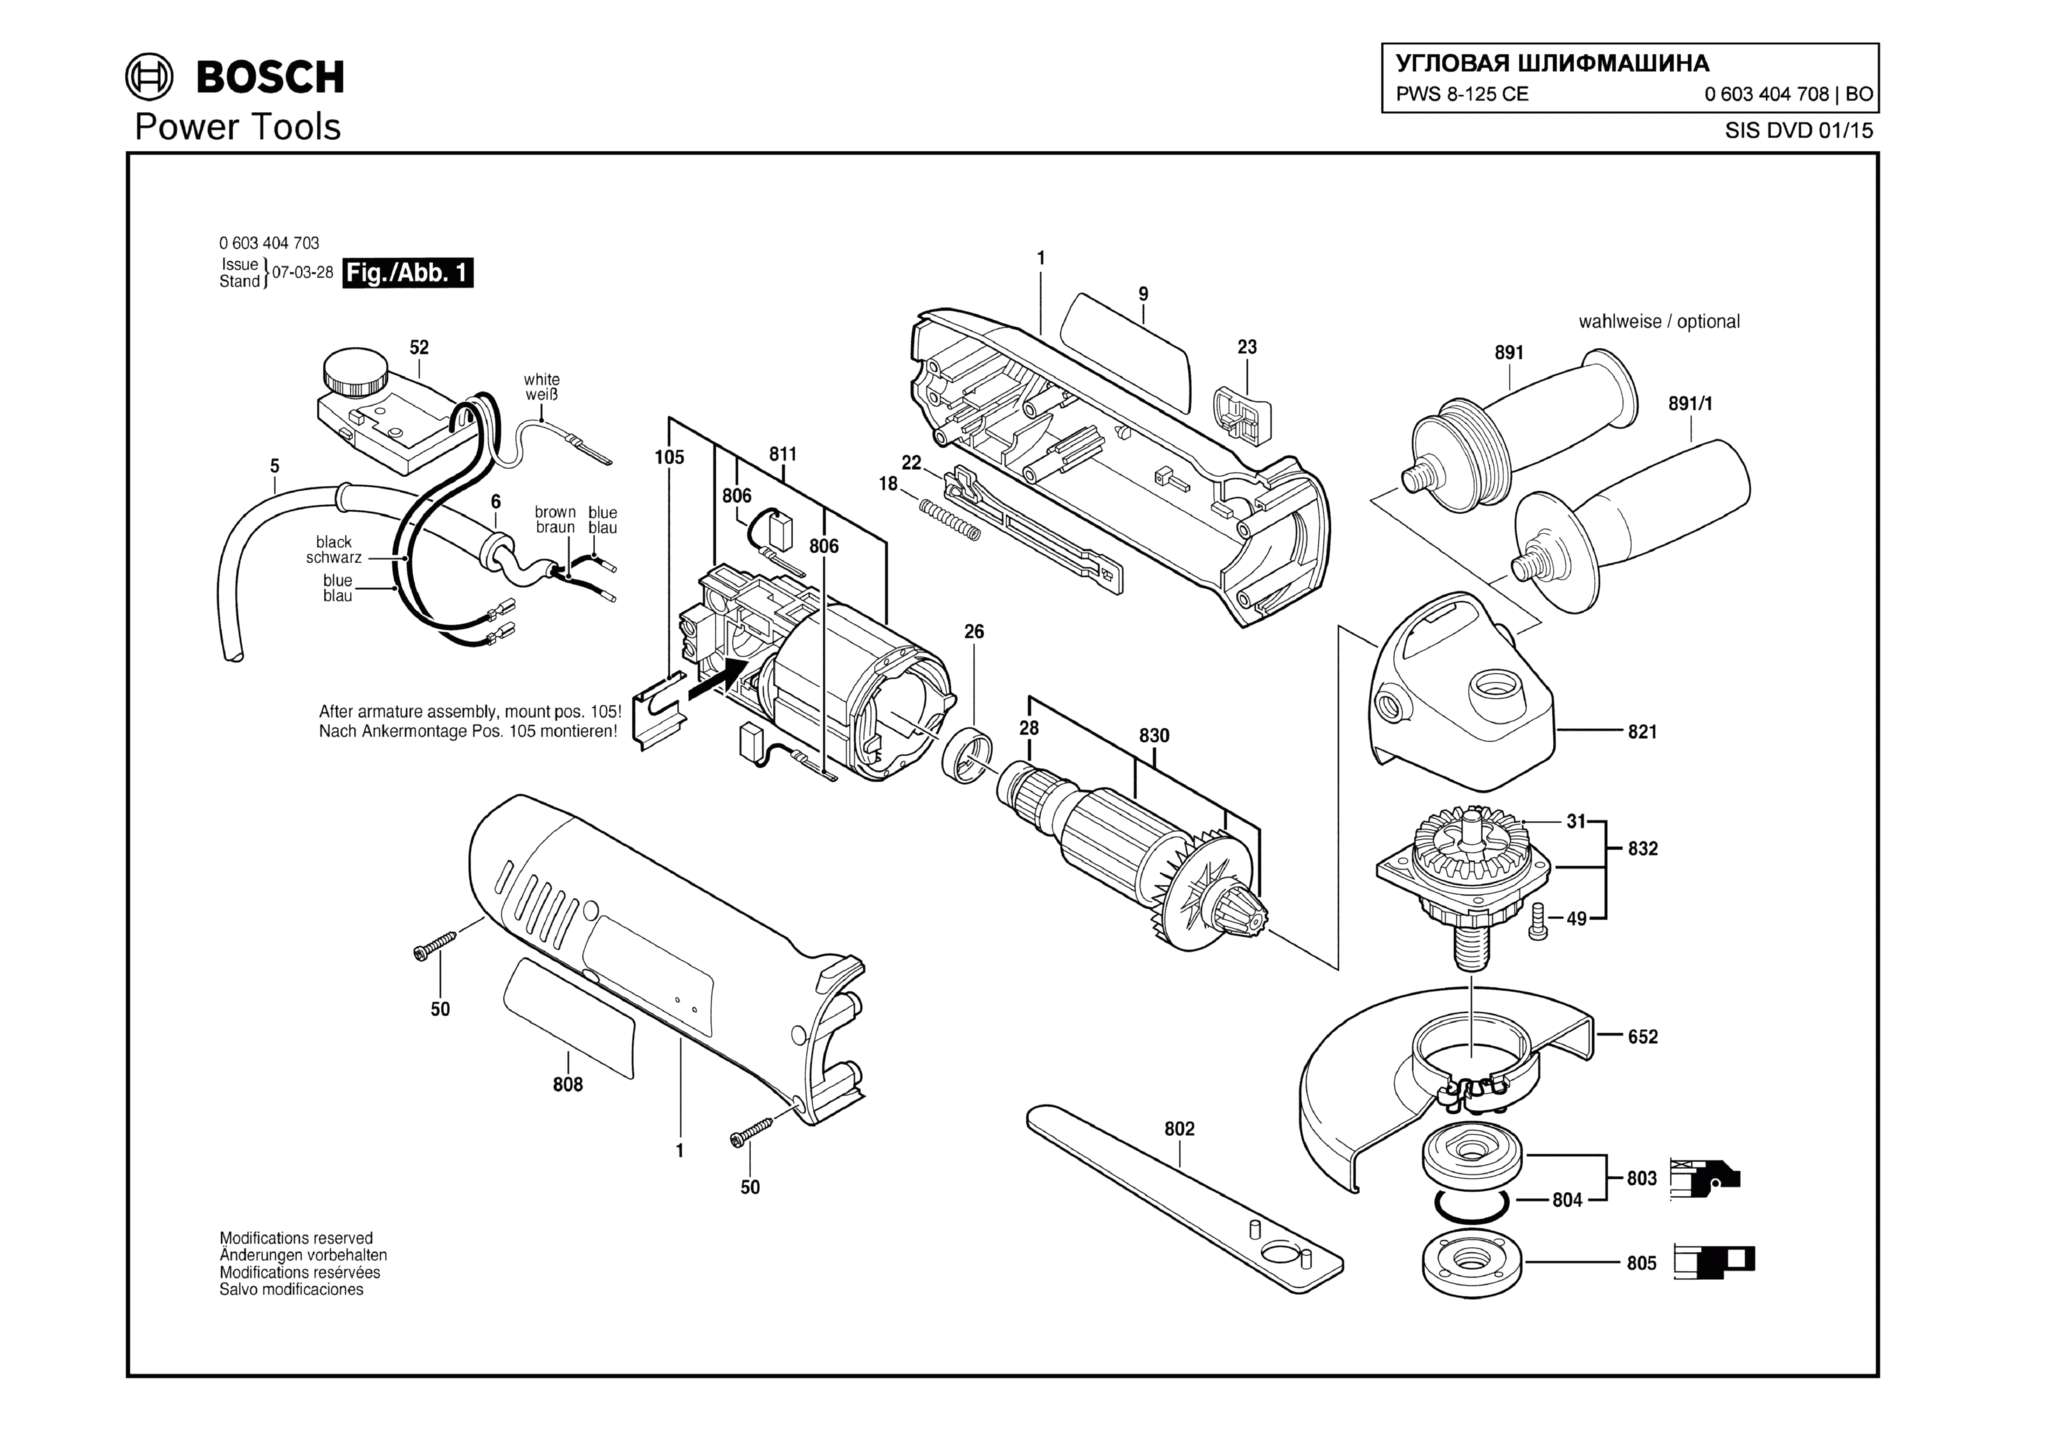 Запчасти, схема и деталировка Bosch PWS 8-125 CE (ТИП 0603404708)